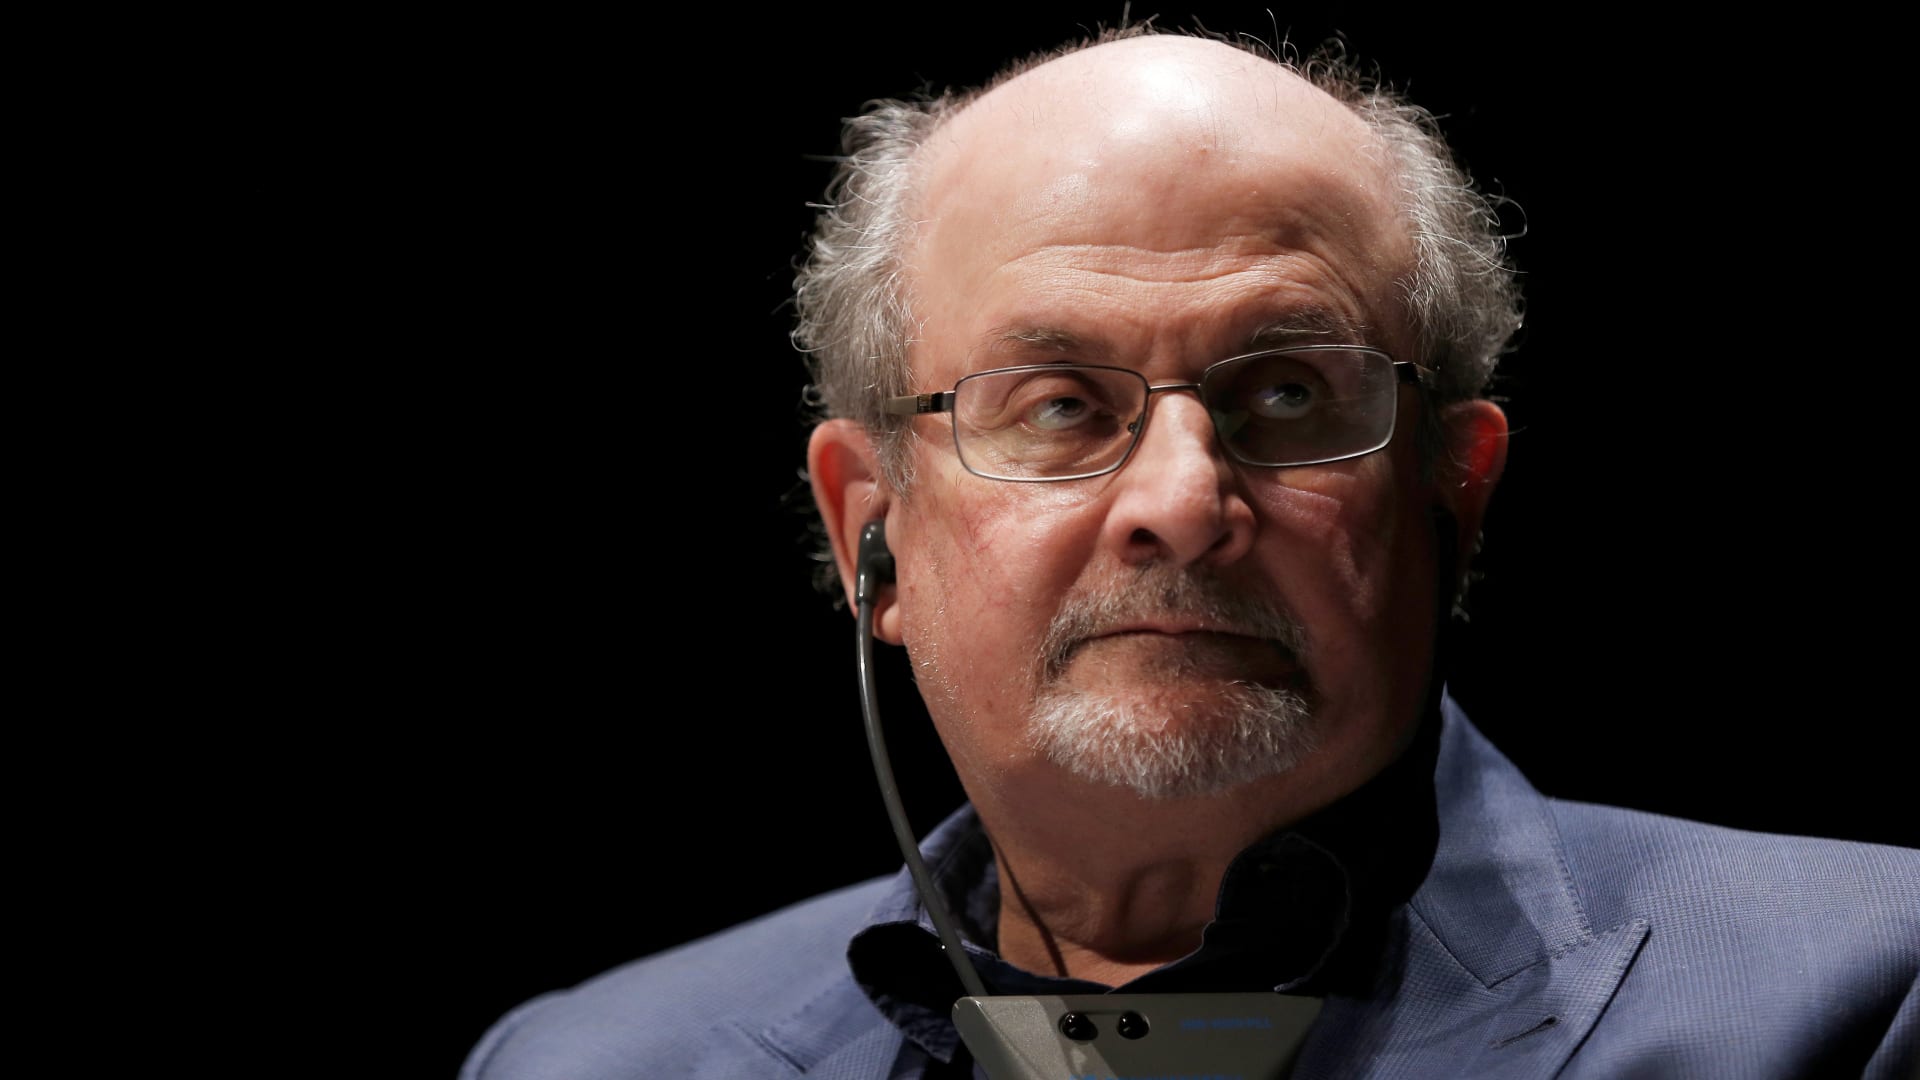 مع انتظار دوافع الهجوم على سلمان رشدي.. مؤلف يوضح سبب إثارة كتاب "آيات شيطانية" جدلًا واسعًا